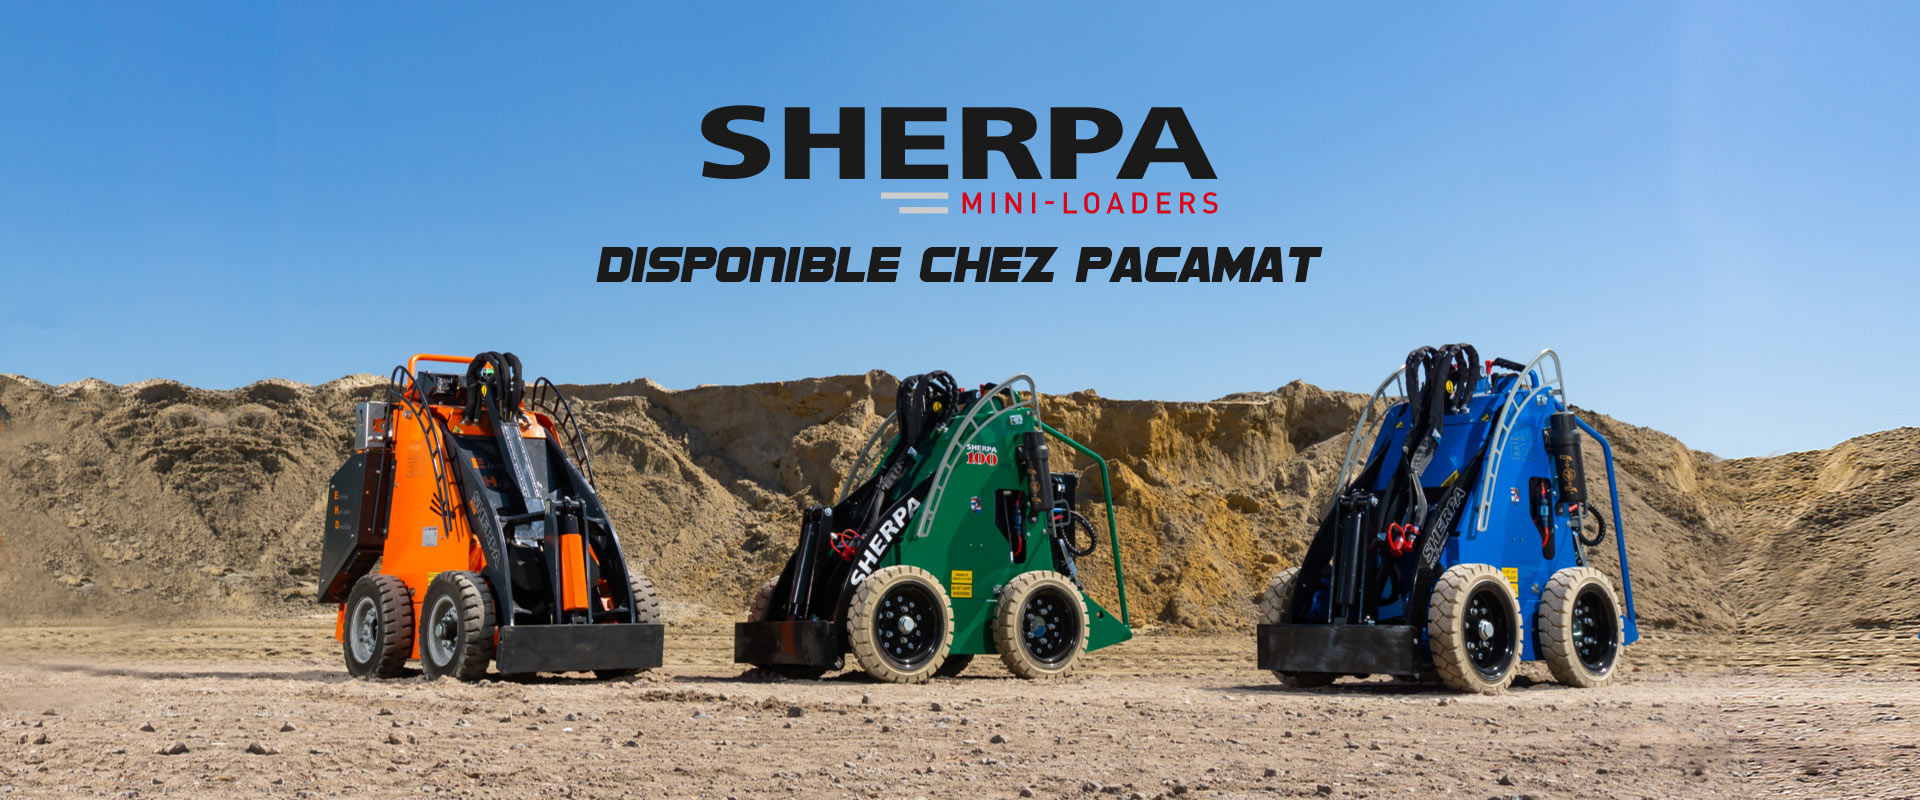 Mini chargeurs Sherpa disponibles chez PACAMAT